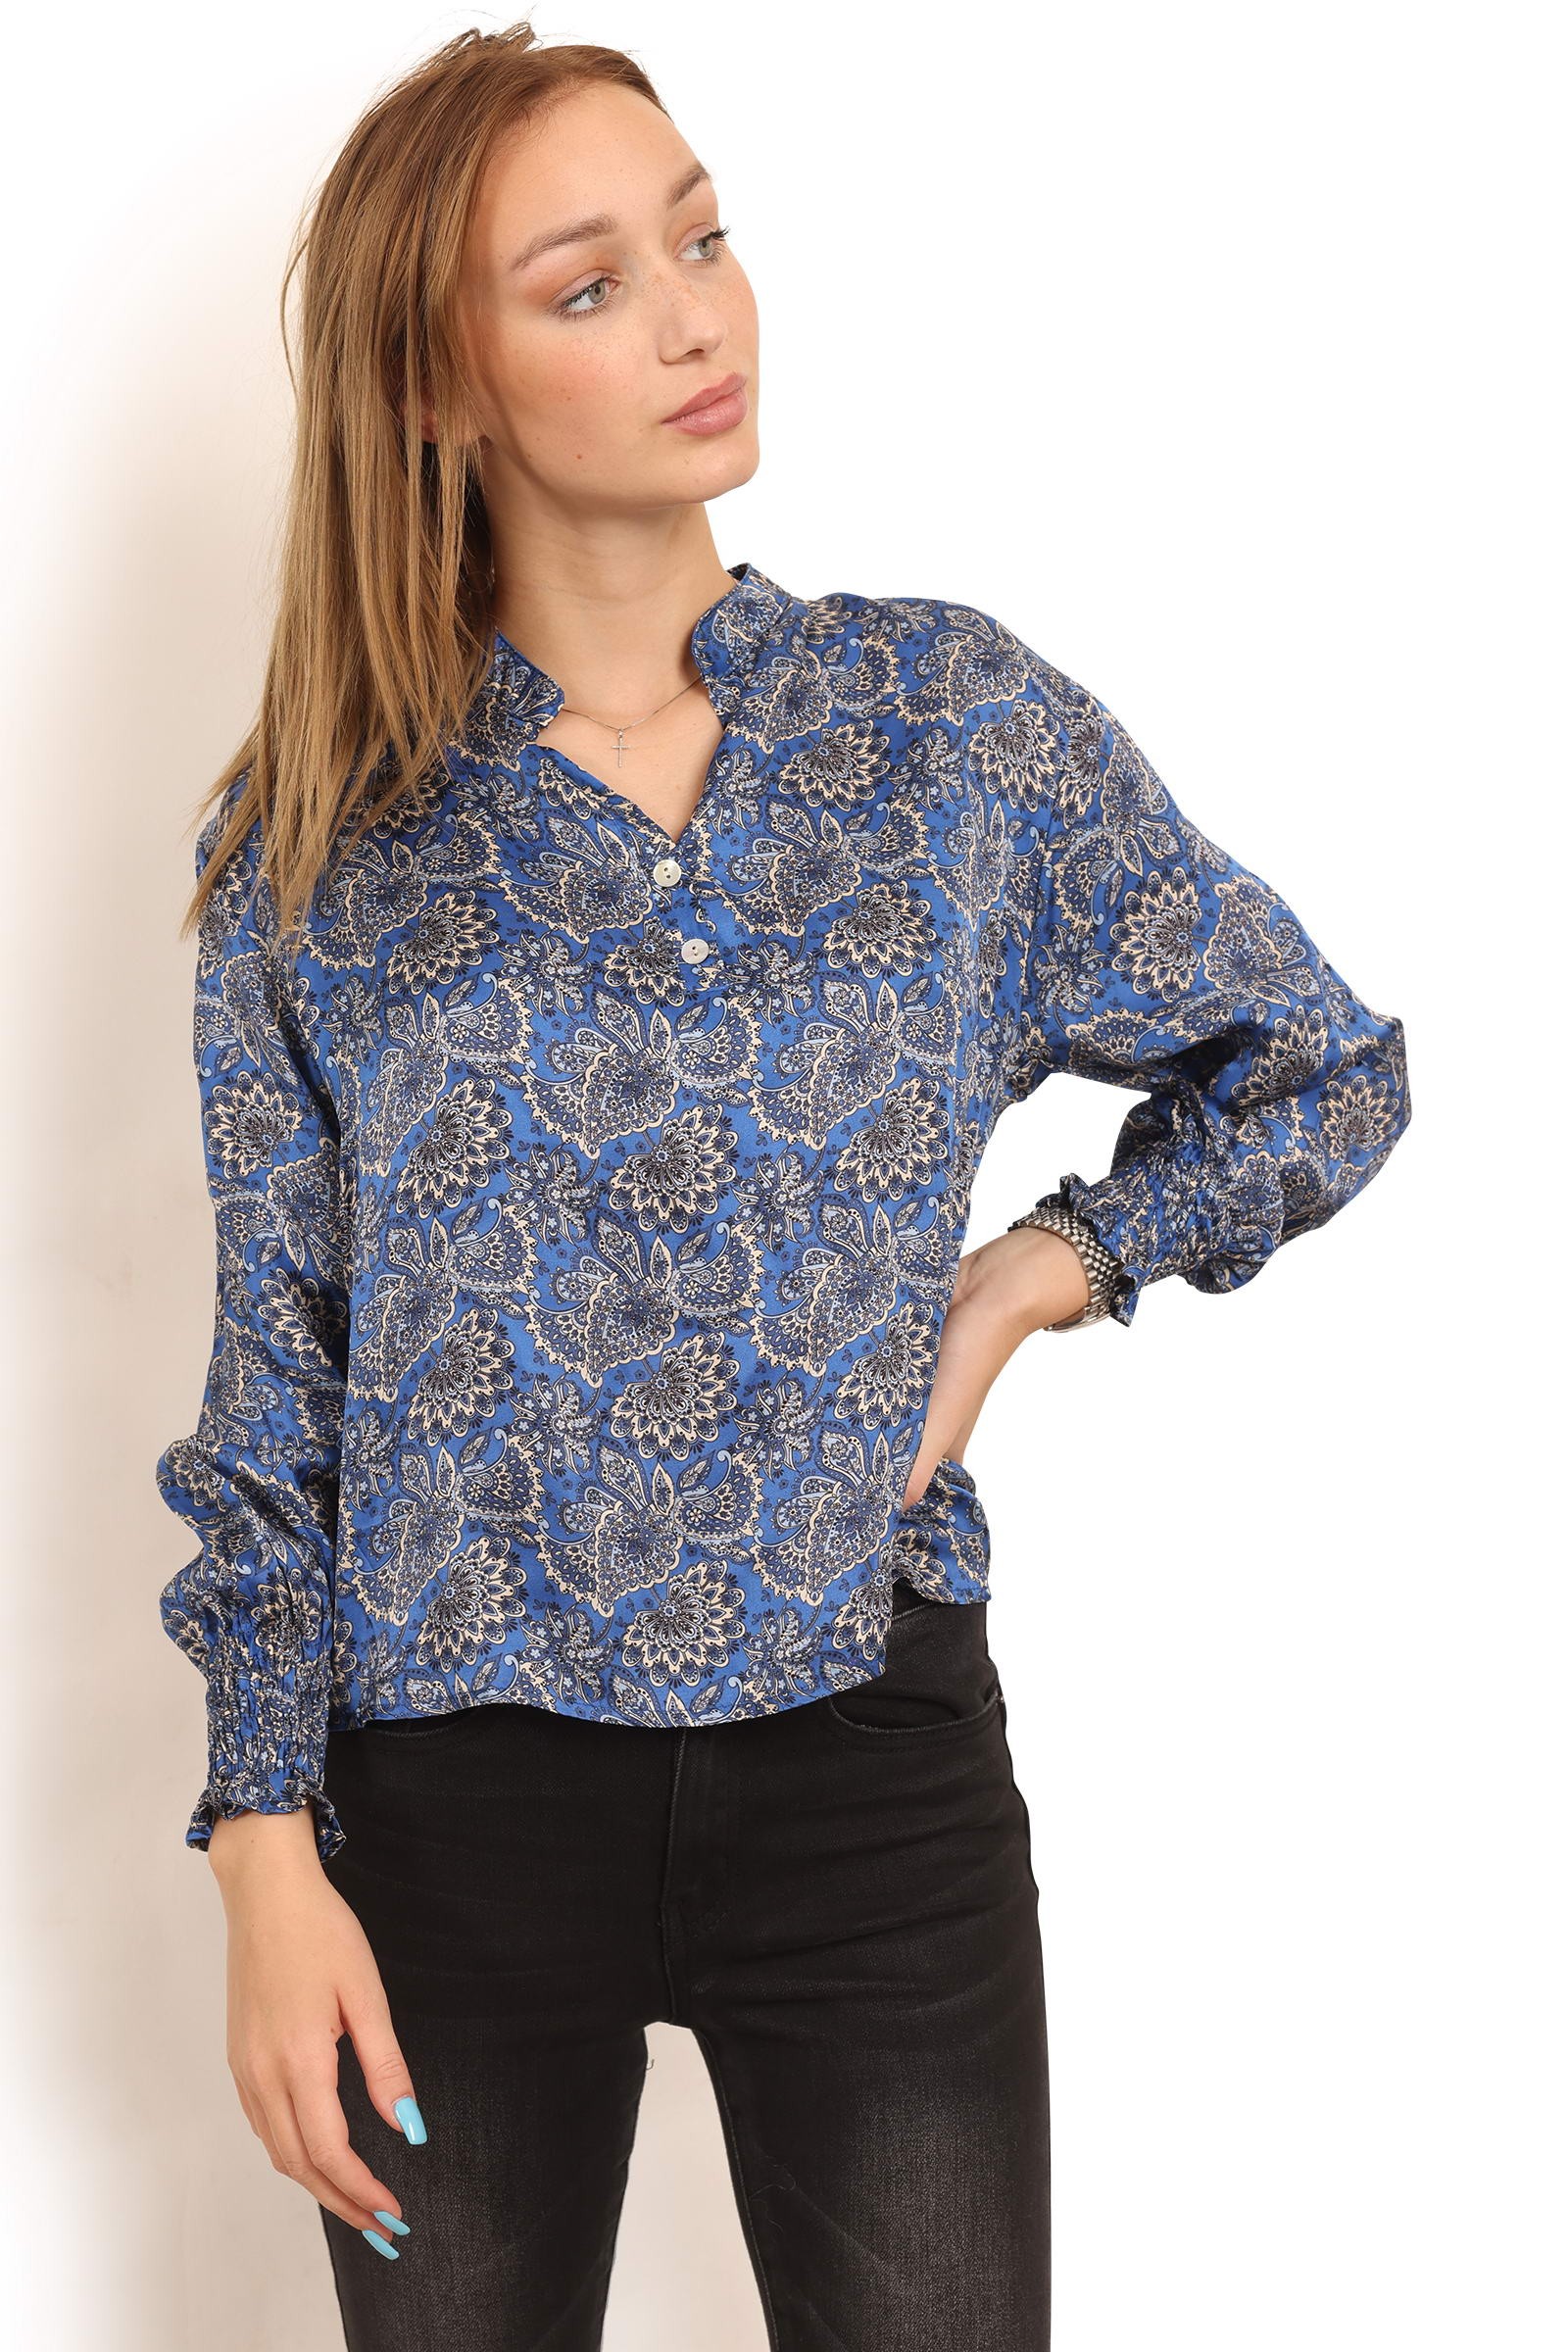 Skjorte kobolt blå paisley print style 1402